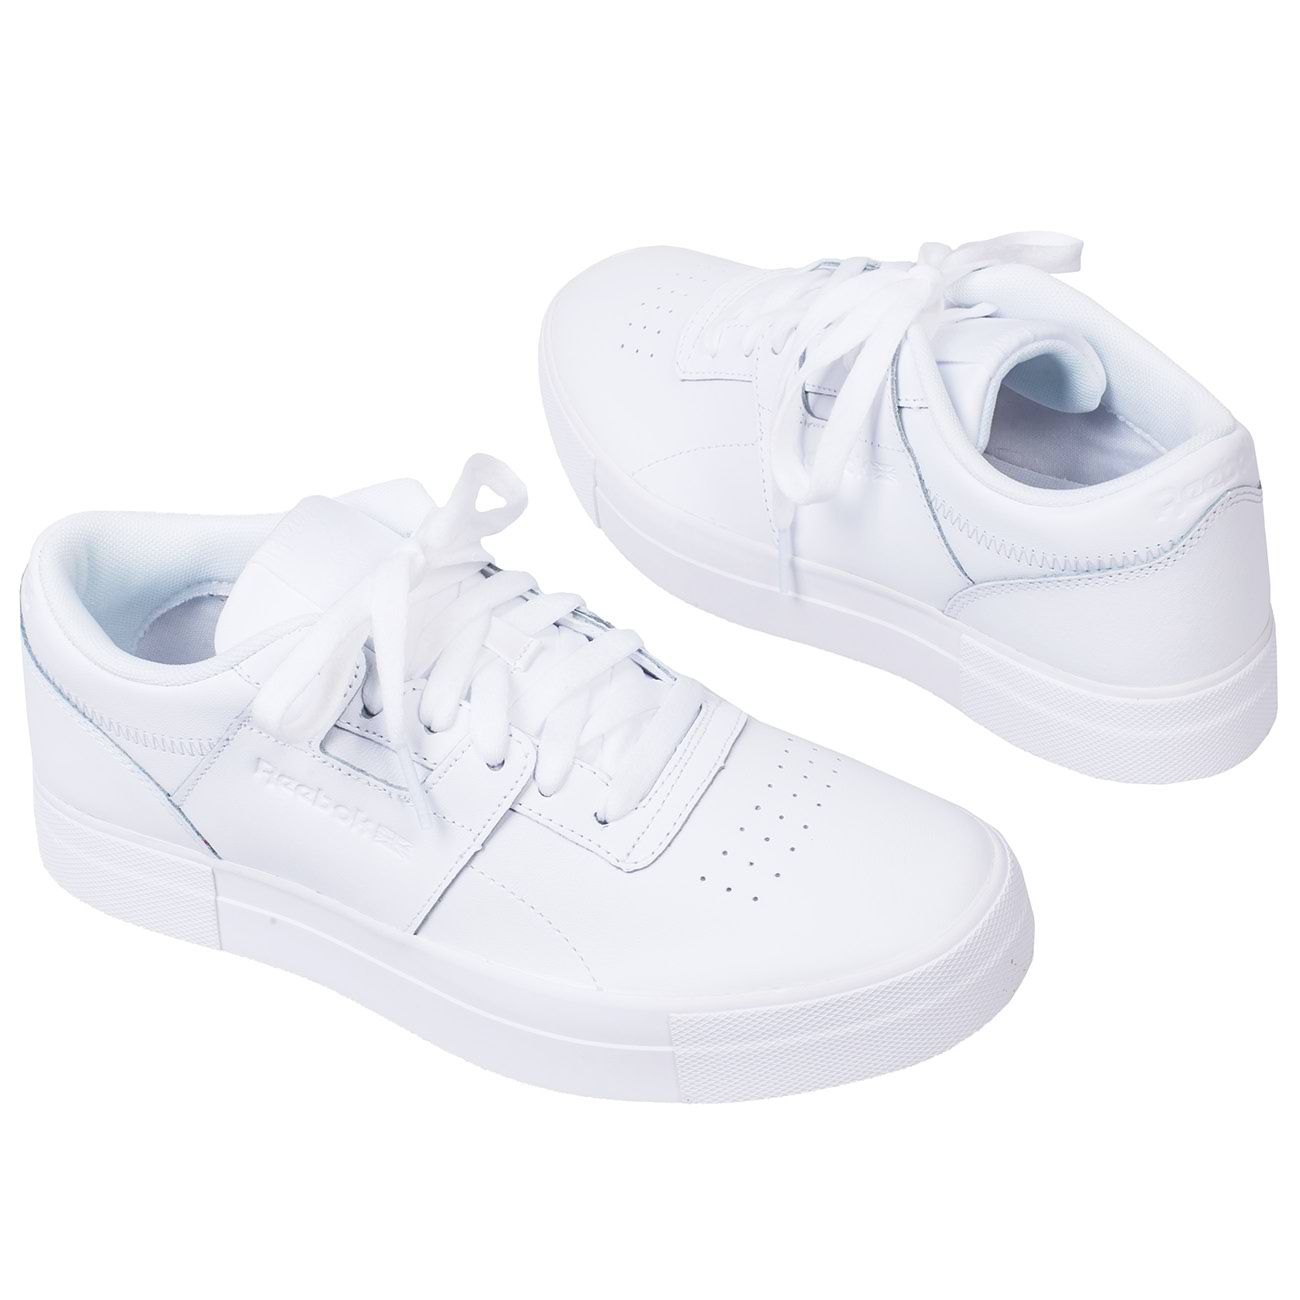 Женские белые кожаные кроссовки Reebok на толстой подошве купить в интернет  магазине Kwinto - товара нет в наличии